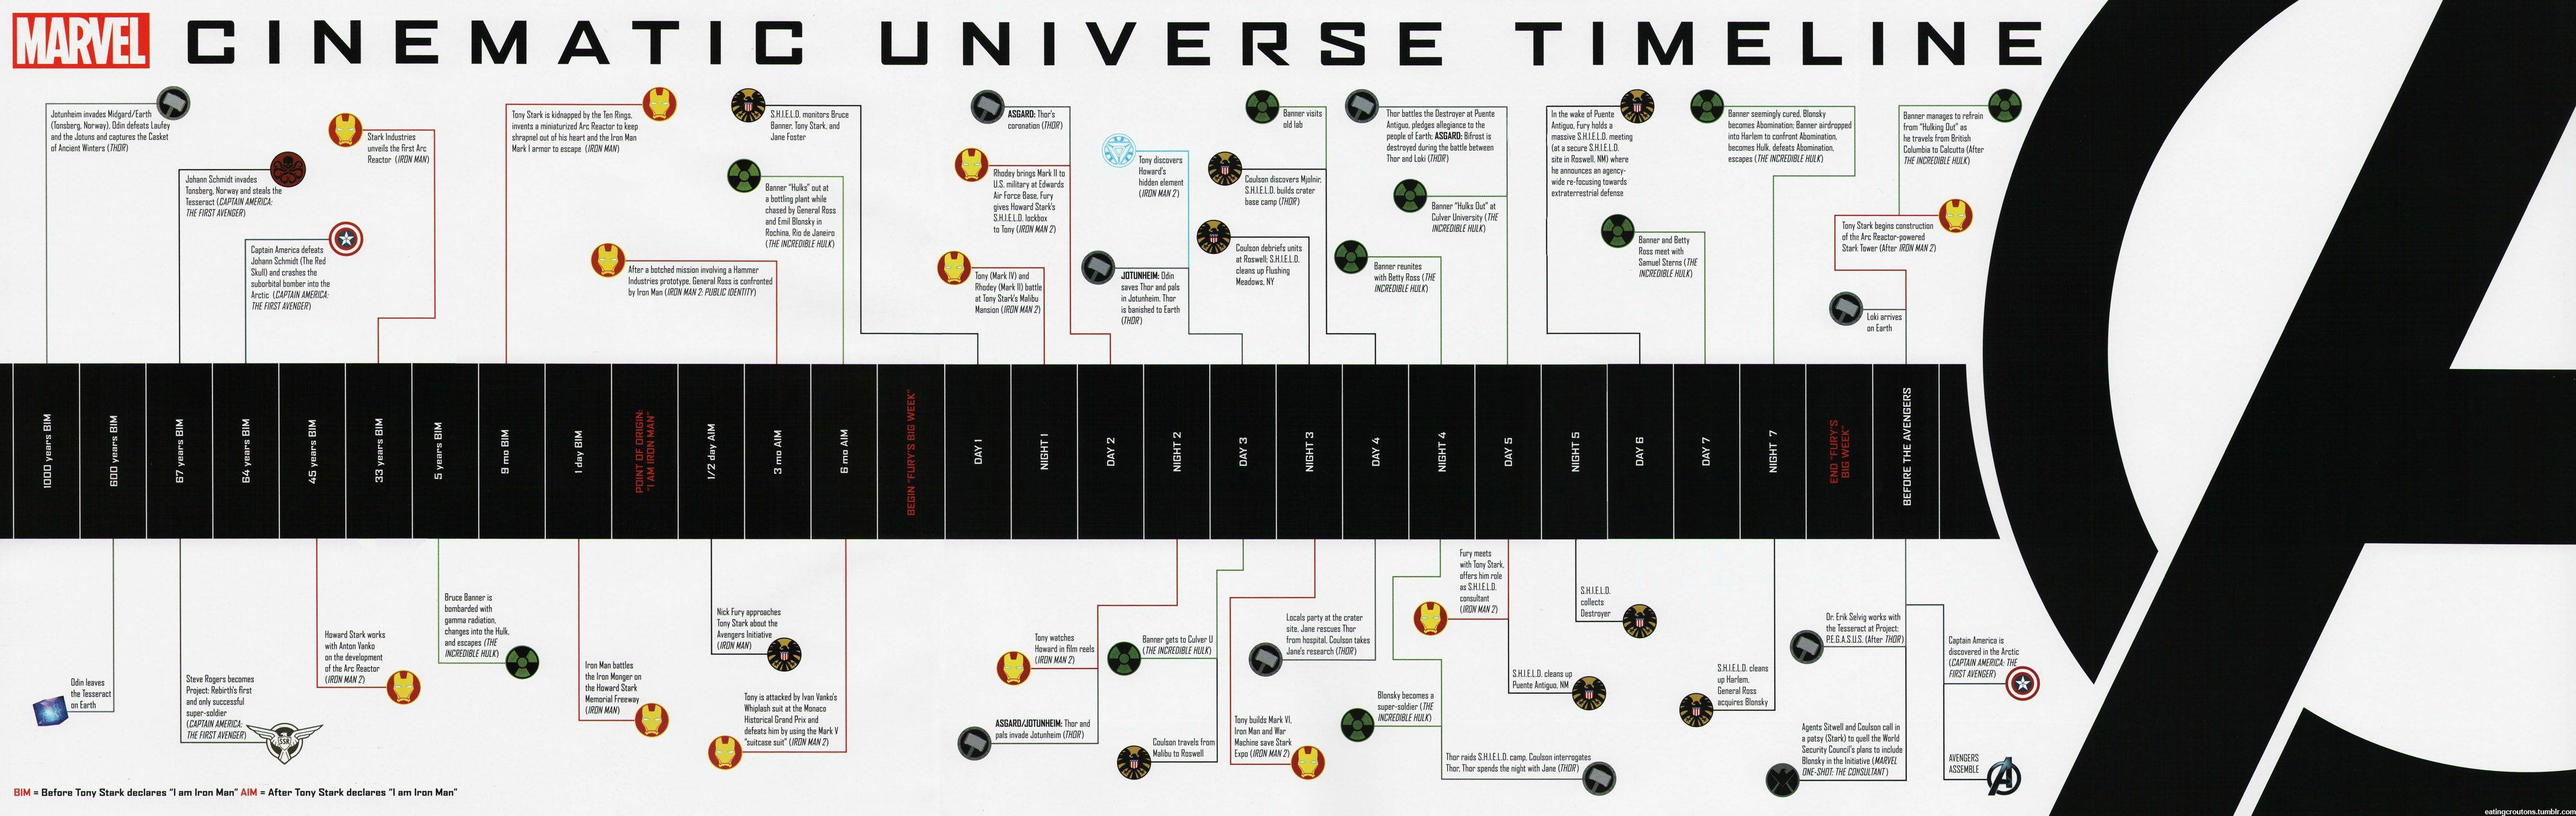 marvel movie timeline